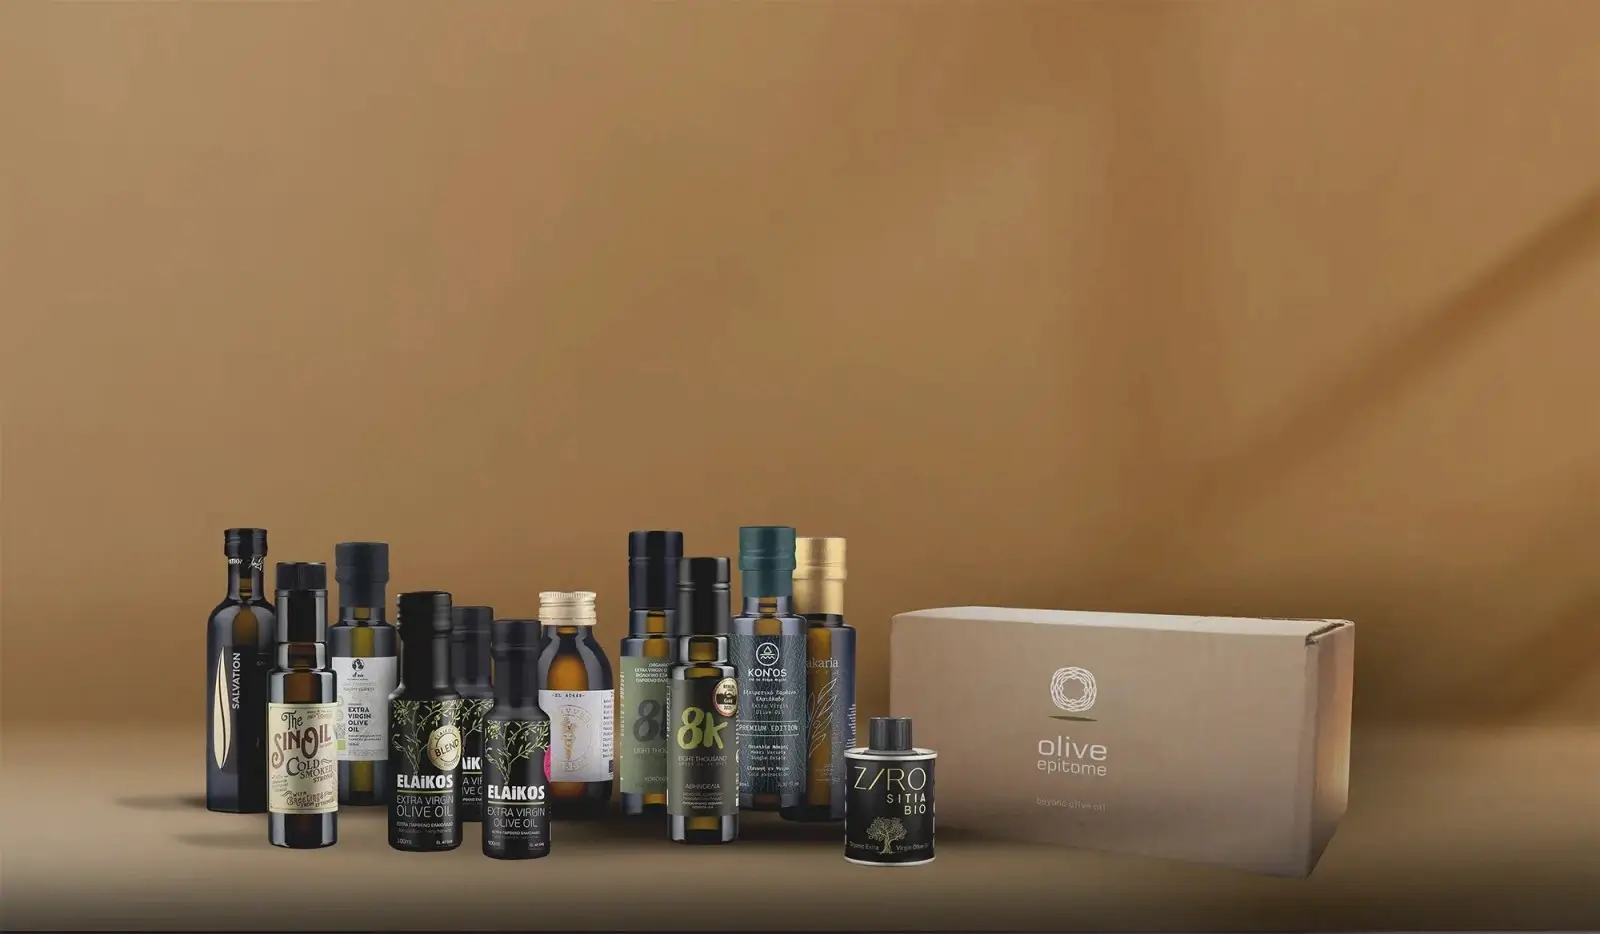 Olive Oil Bottles 100ml tasting kit